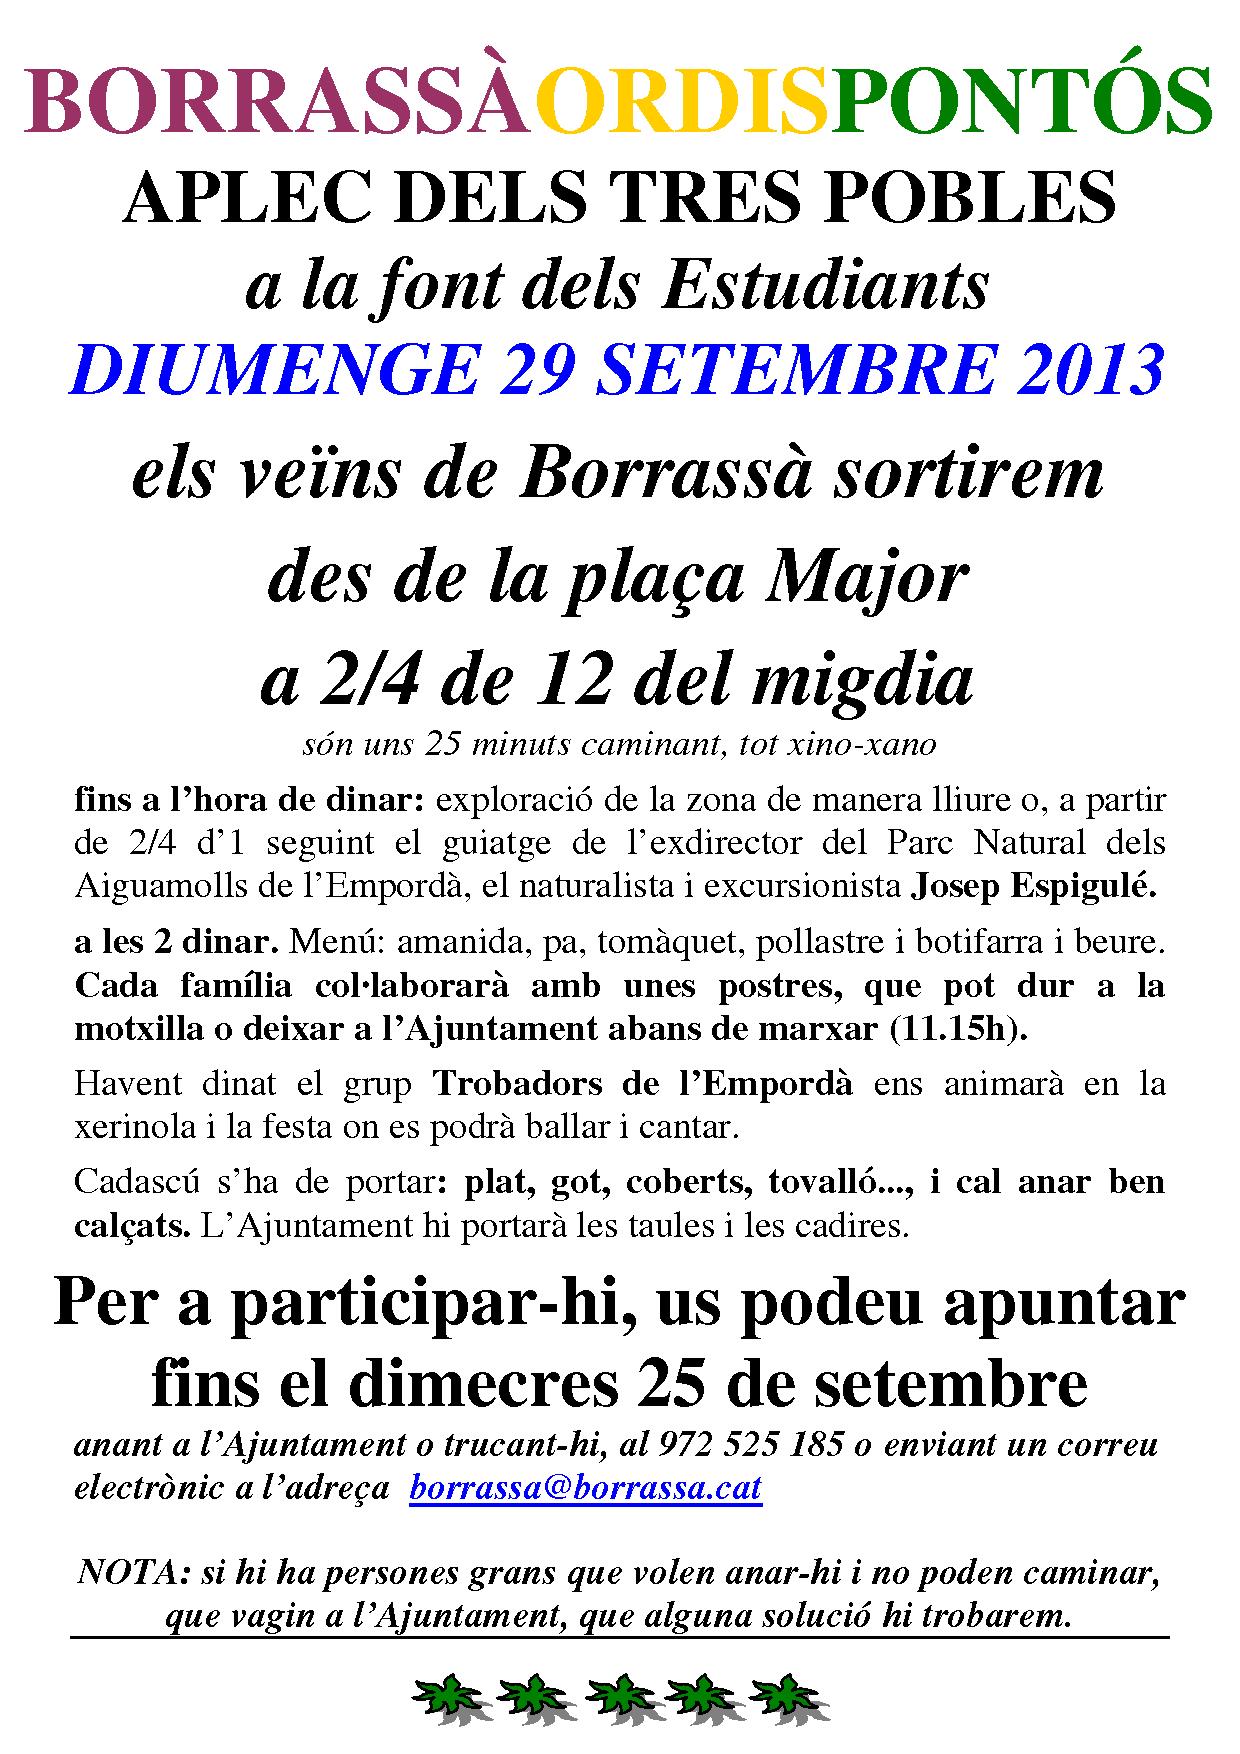 El proper diumenge, 29 de setembre, la font dels Estudiants acollirà la Trobada del Pals entre els veïns d'Ordis, Pontós i Borrassà. Els de Borrassà sortiran de la plaça Major a 2/4 de 12 del migdia per anar-hi caminant.